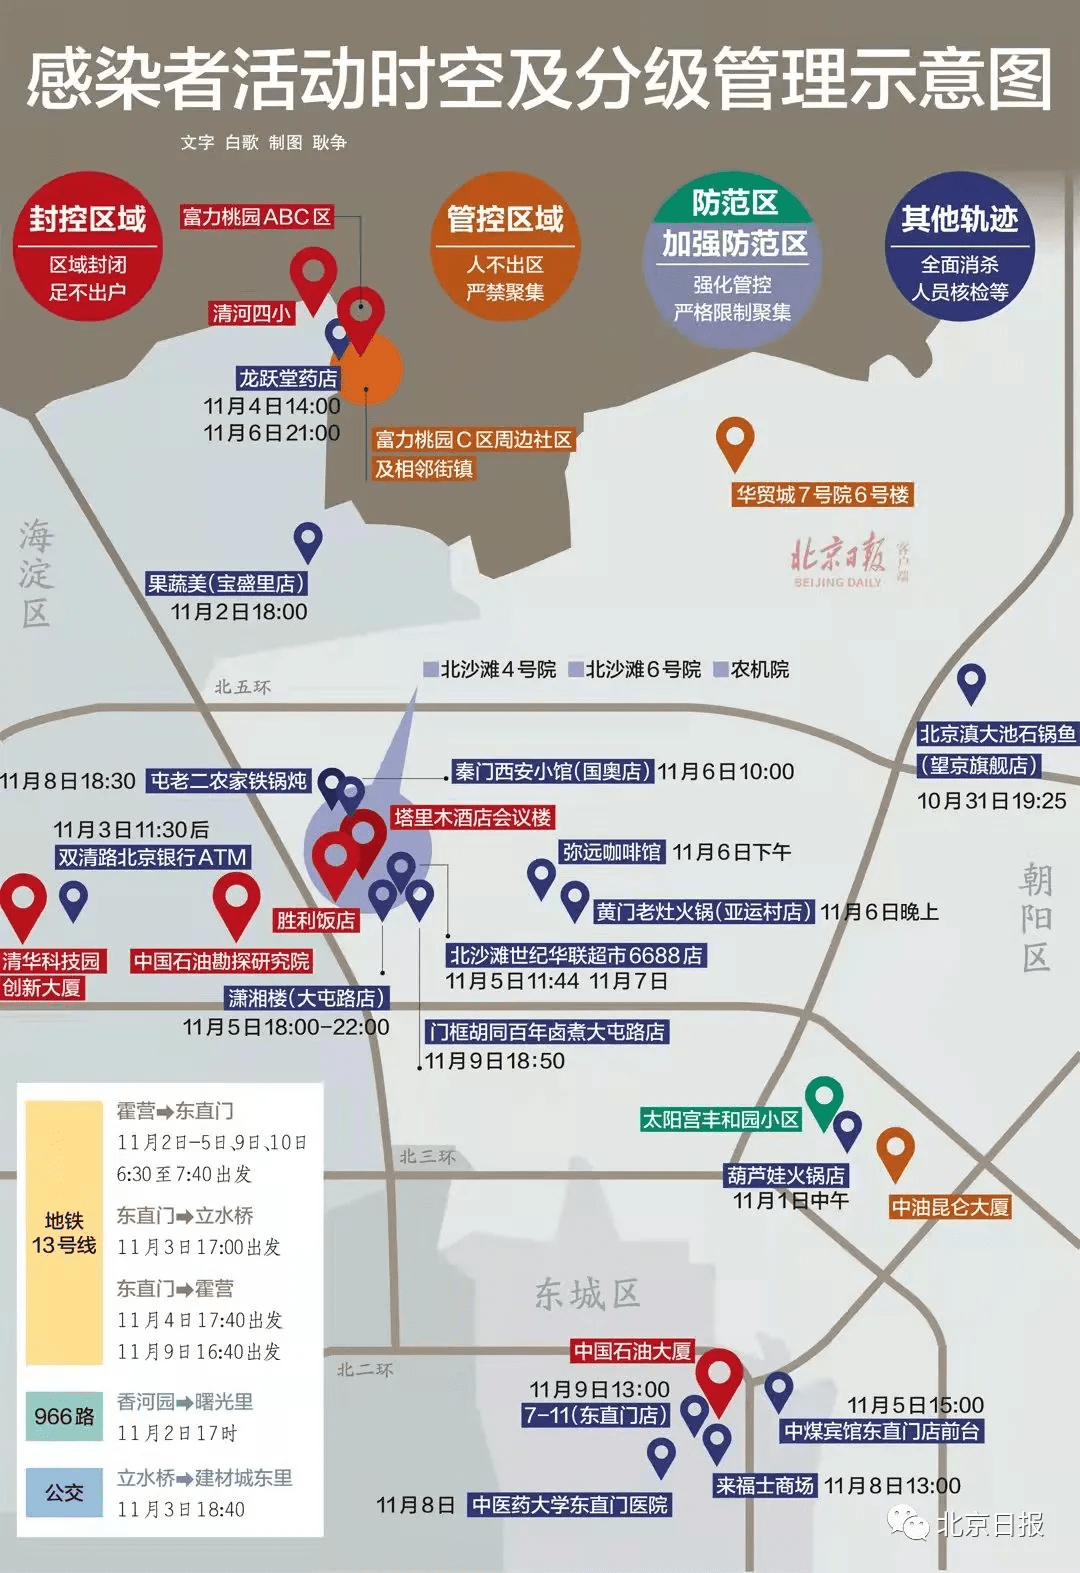 北京7例感染者去过这些地方,轨迹地图来了!